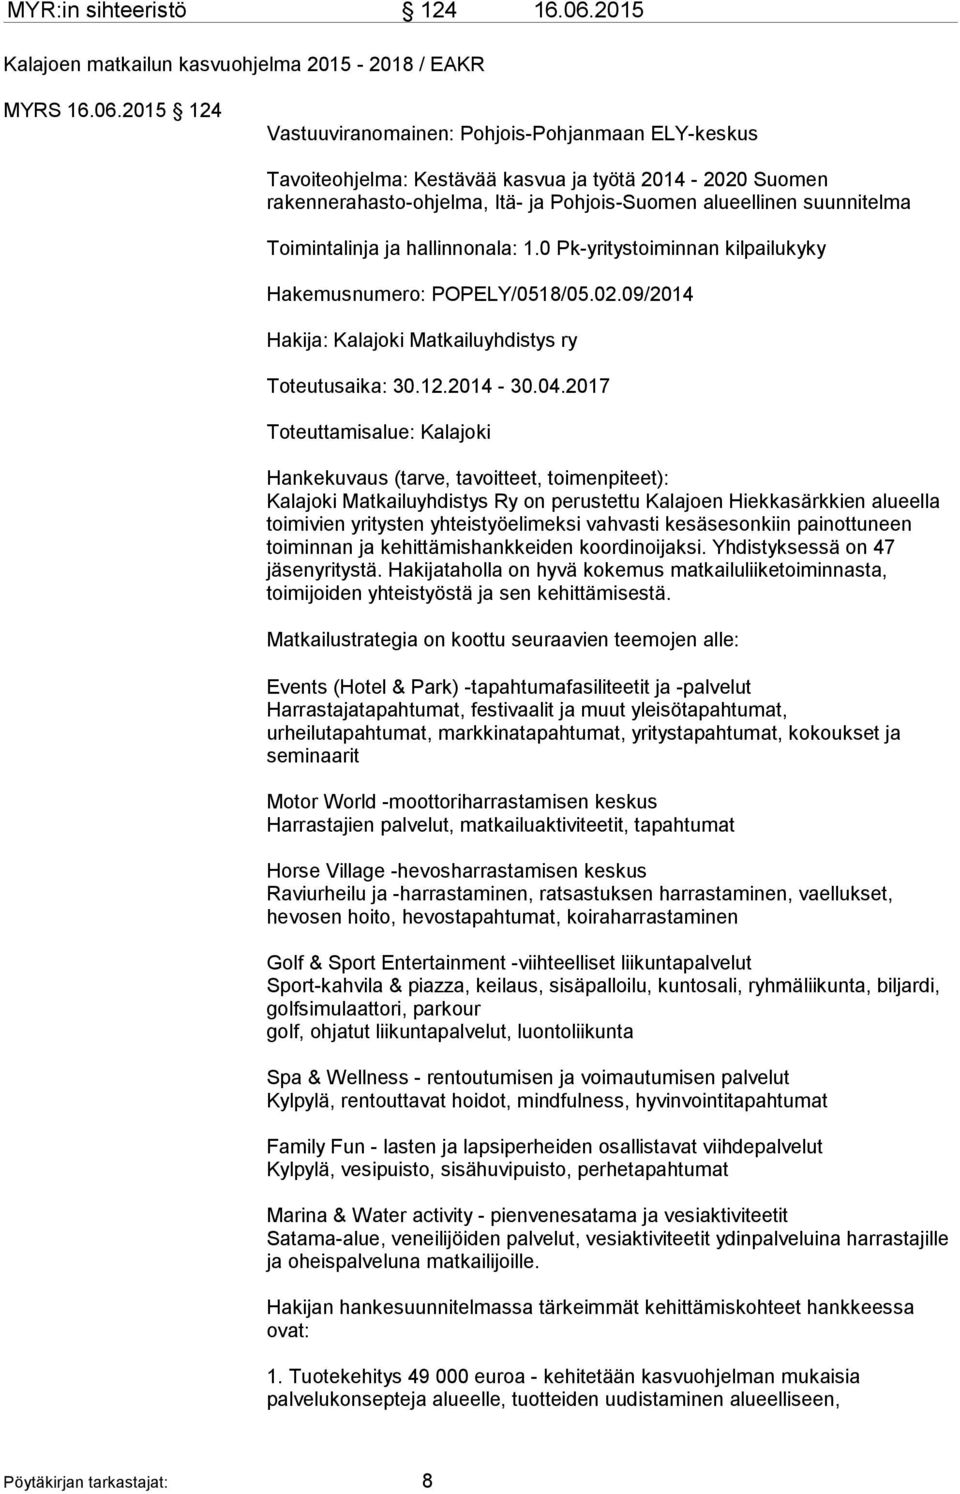 2015 124 Vastuuviranomainen: Pohjois-Pohjanmaan ELY-keskus Tavoiteohjelma: Kestävää kasvua ja työtä 2014-2020 Suomen rakennerahasto-ohjelma, Itä- ja Pohjois-Suomen alueellinen suunnitelma